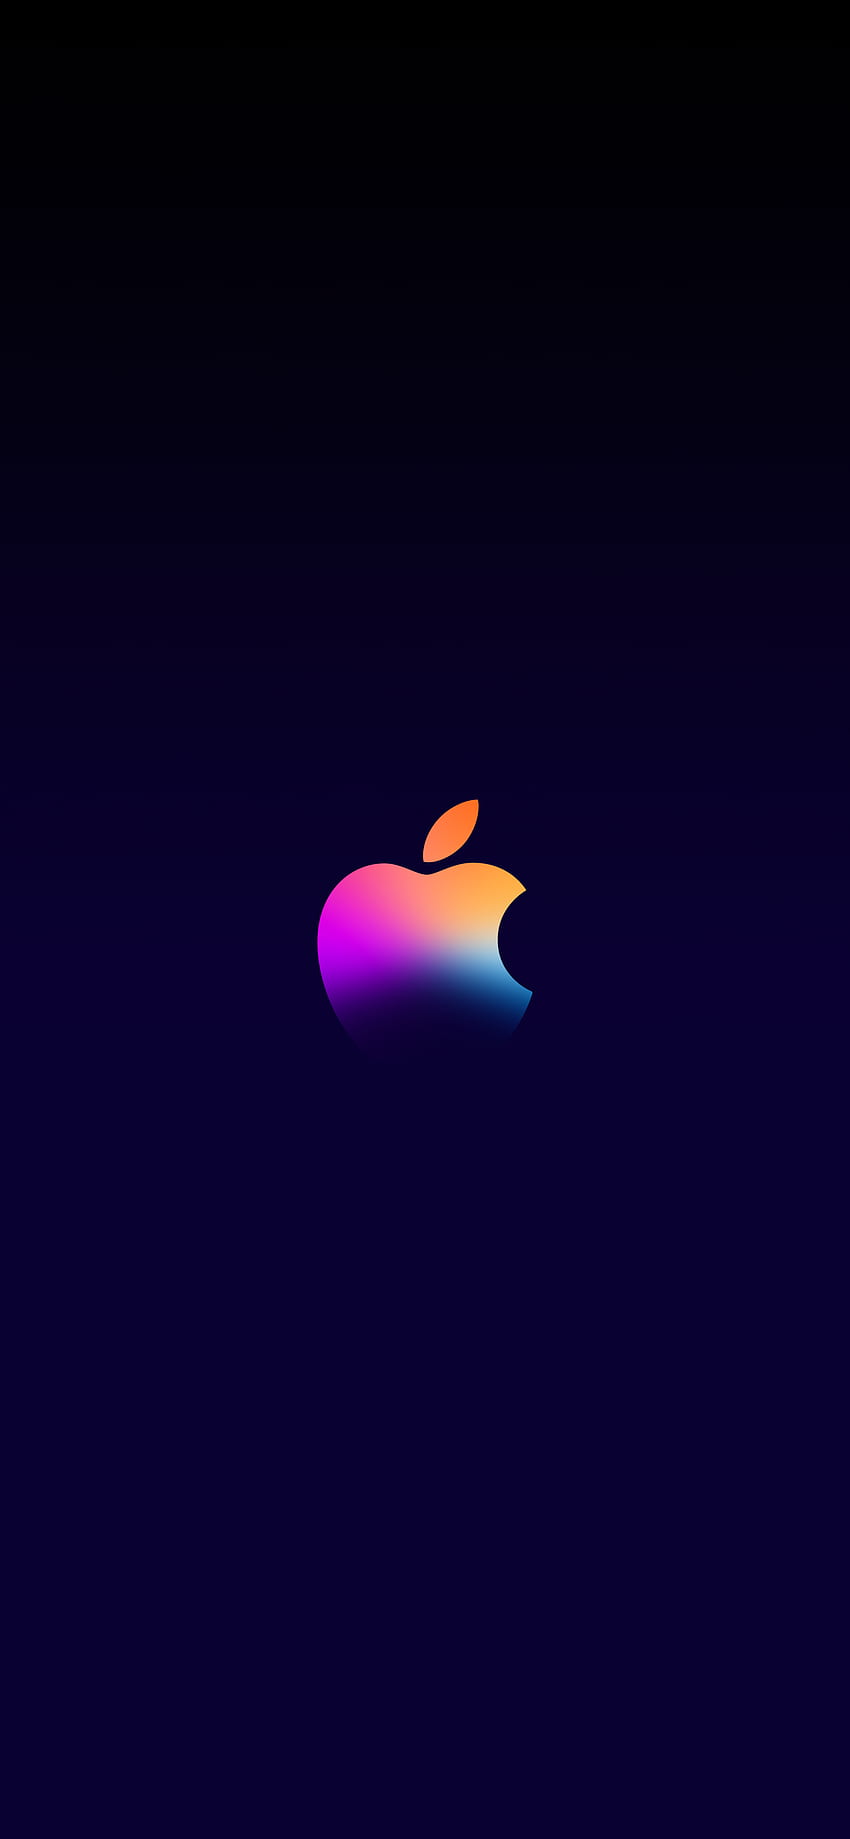 Apple Event One More Thing - Central em 2021. Apple logo iphone, Apple iphone, Apple Papel de parede de celular HD